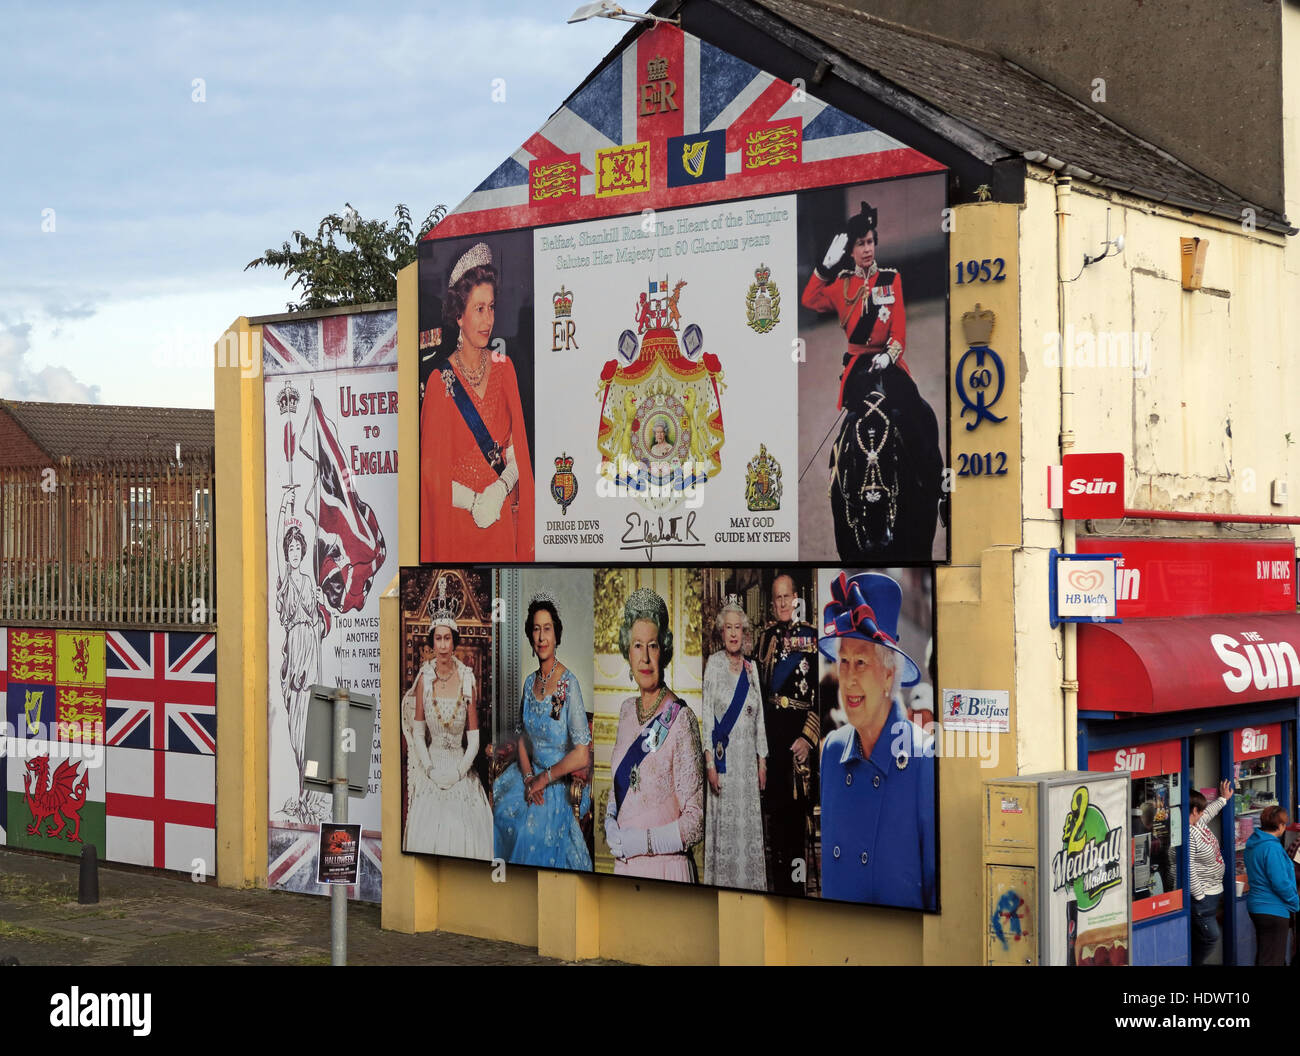 60 ans de la reine Elizabeth II Shankill Road West Belfast, Irlande du Nord, Royaume-Uni Banque D'Images